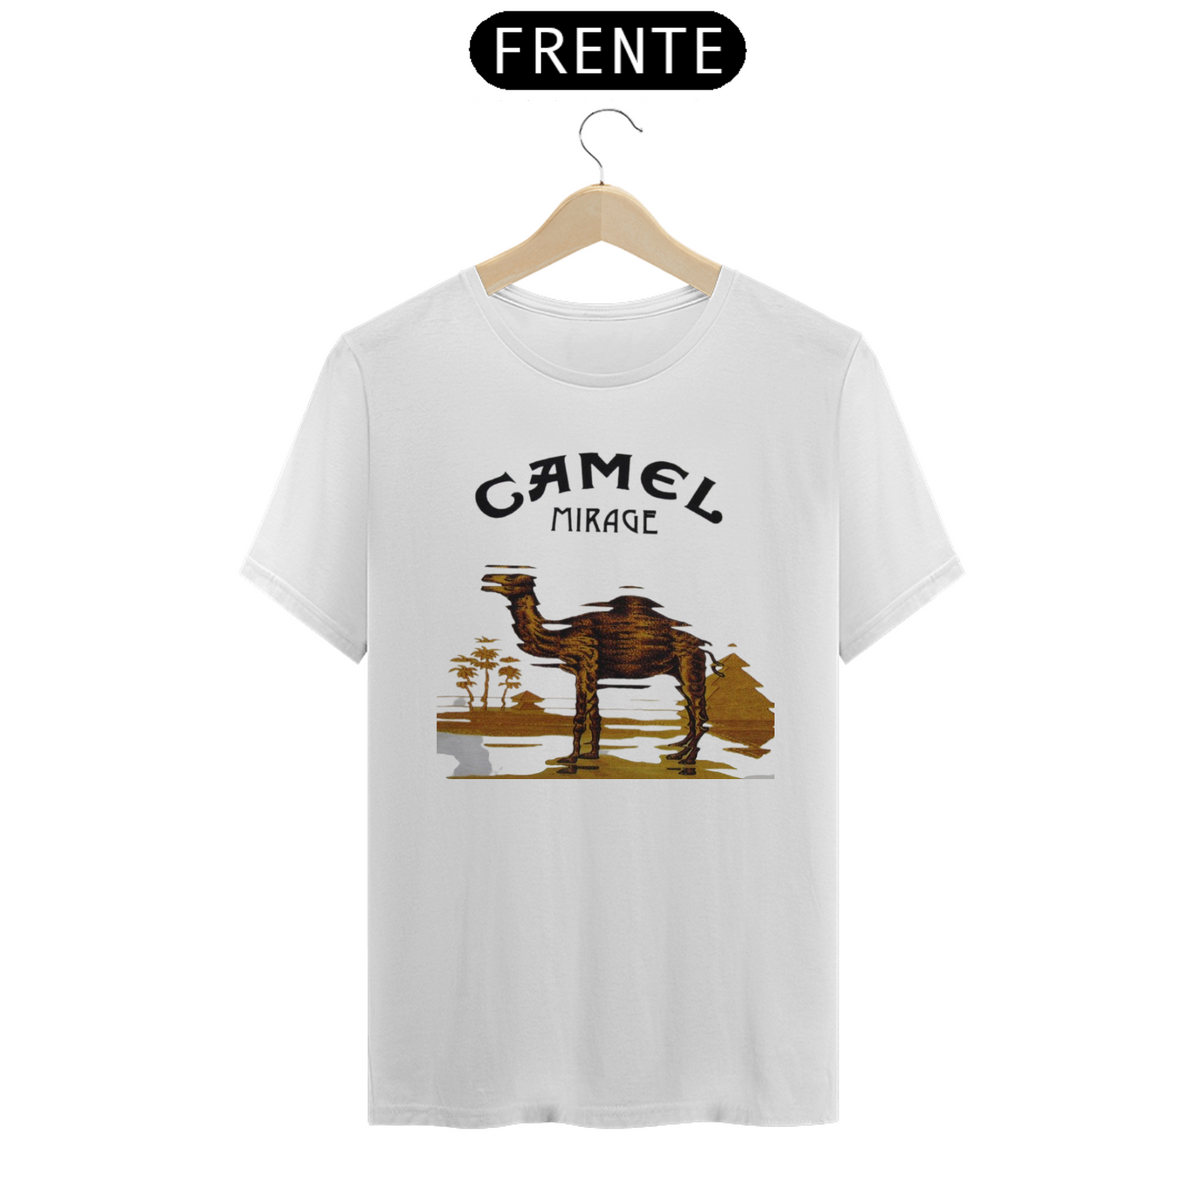 Nome do produto: Camel - Mirage